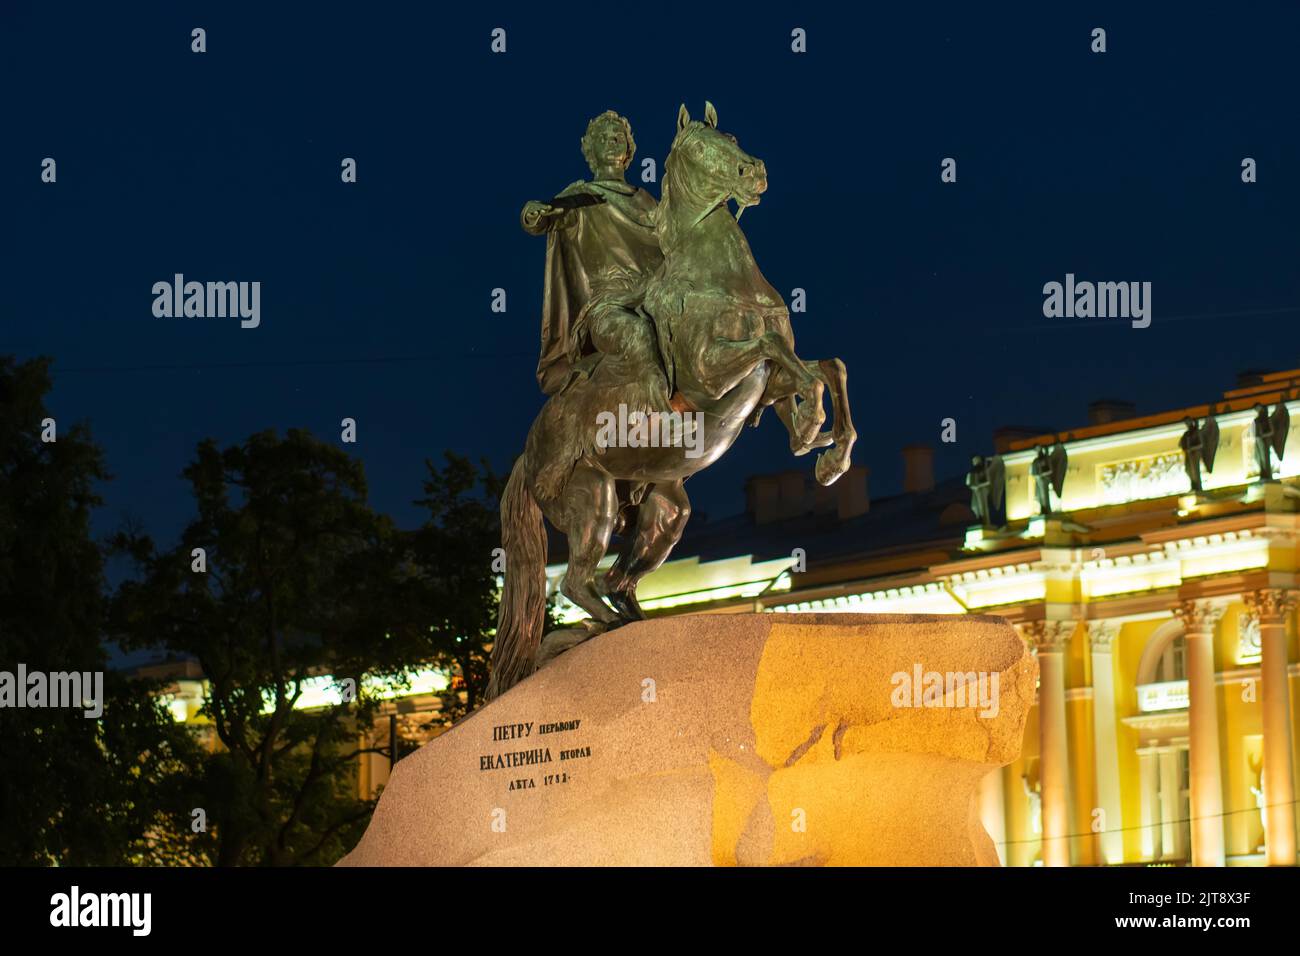 RUSIA, PETERSBURGO - 18 DE AGOSTO de 2022: Noche monumento bronce pedro gran petersburgo emperador rusia escultura, para el viaje de la estatua en petersburgo y el cielo Foto de stock